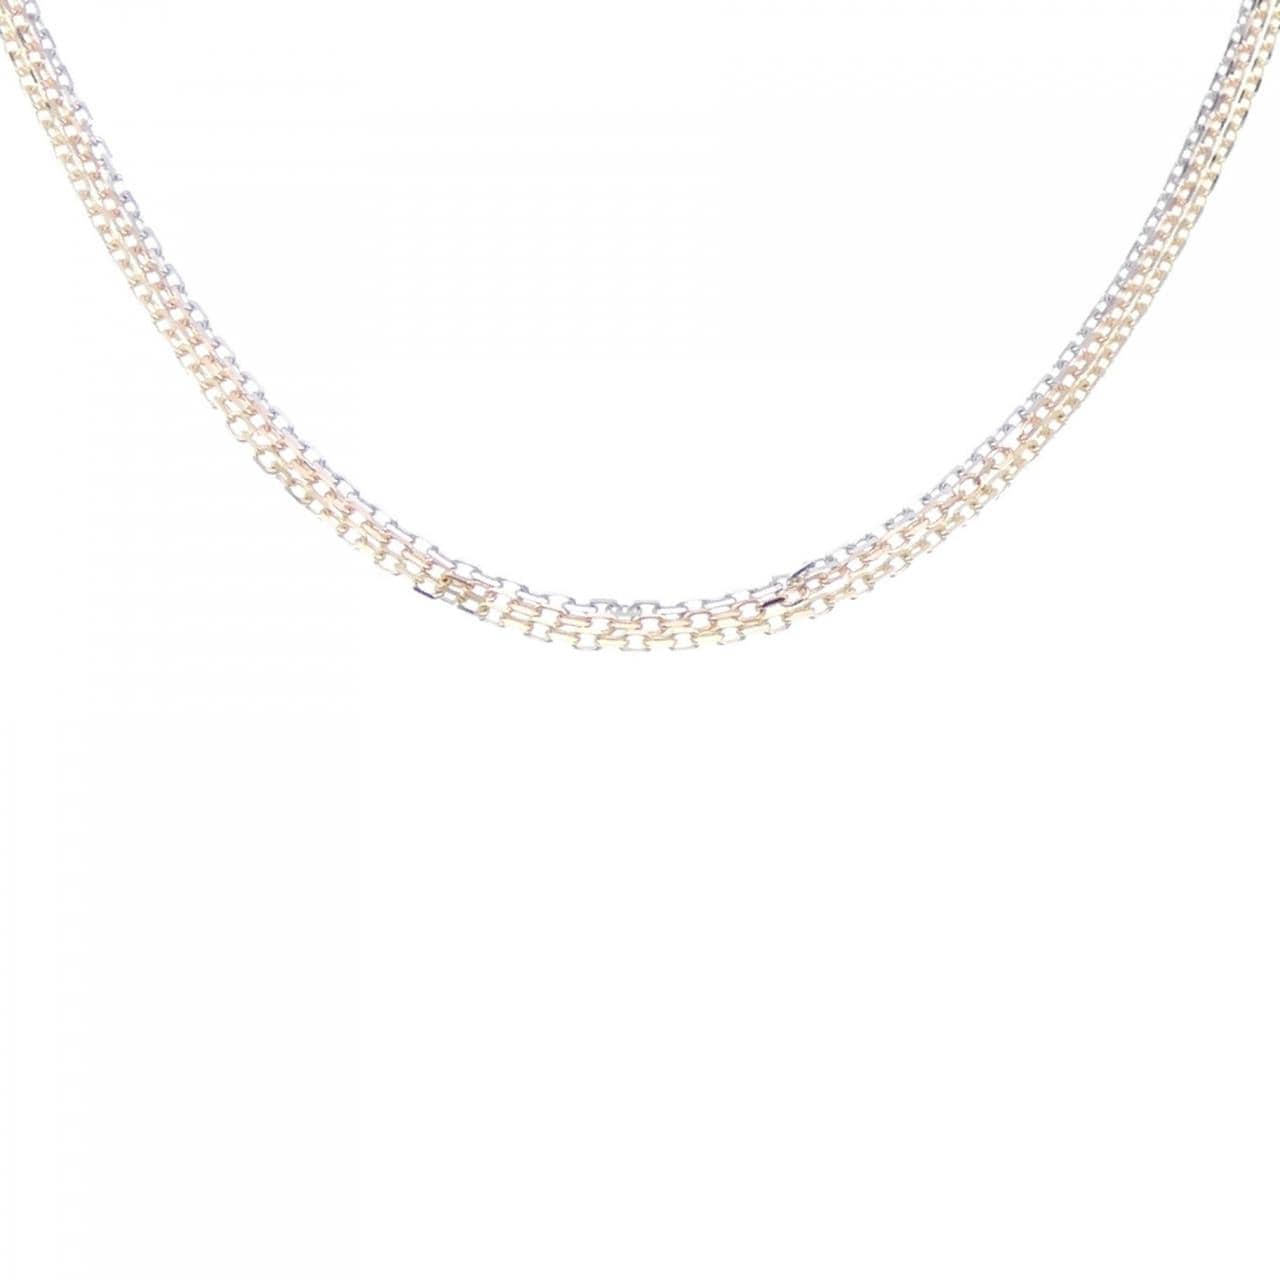 Cartier Trinity necklace